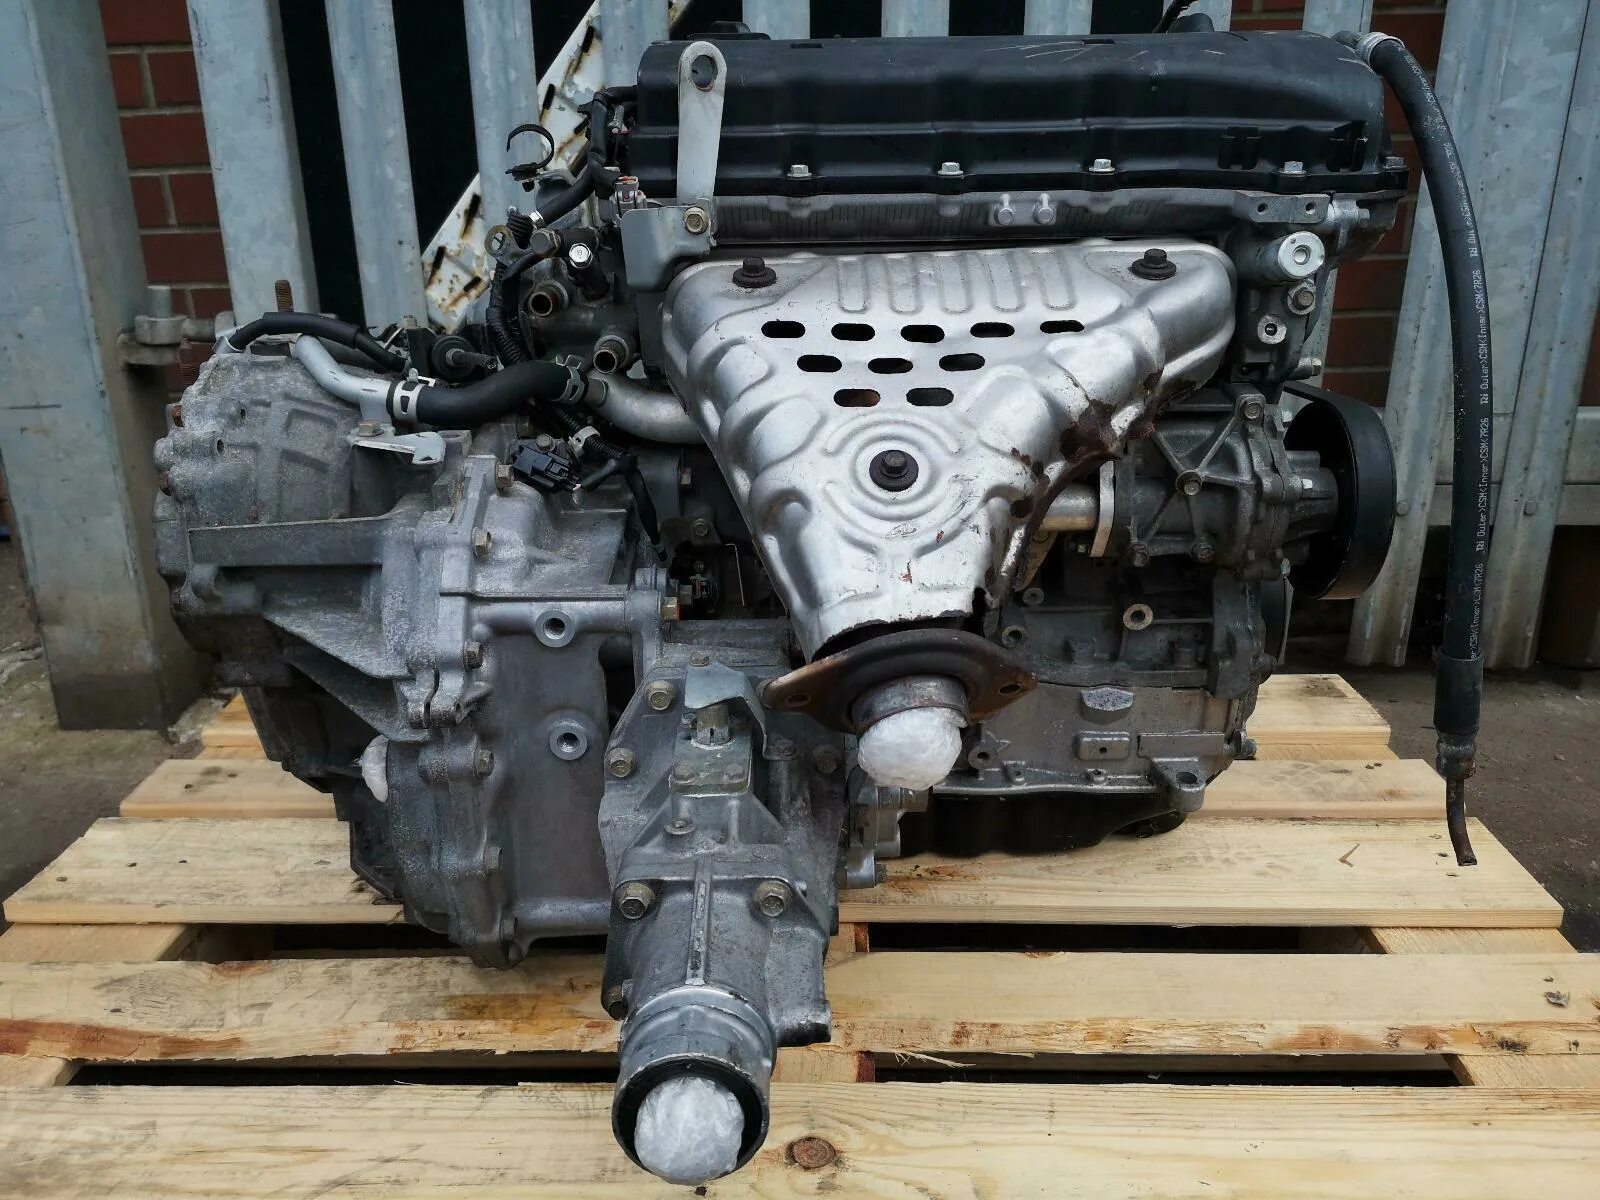 Мотор Аутлендер 2.4. 4 B12 двигатель Митсубиси. 4b12 мотор Outlander. Двигатель Митсубиси Аутлендер 2.4. Мицубиси аутлендер мотор